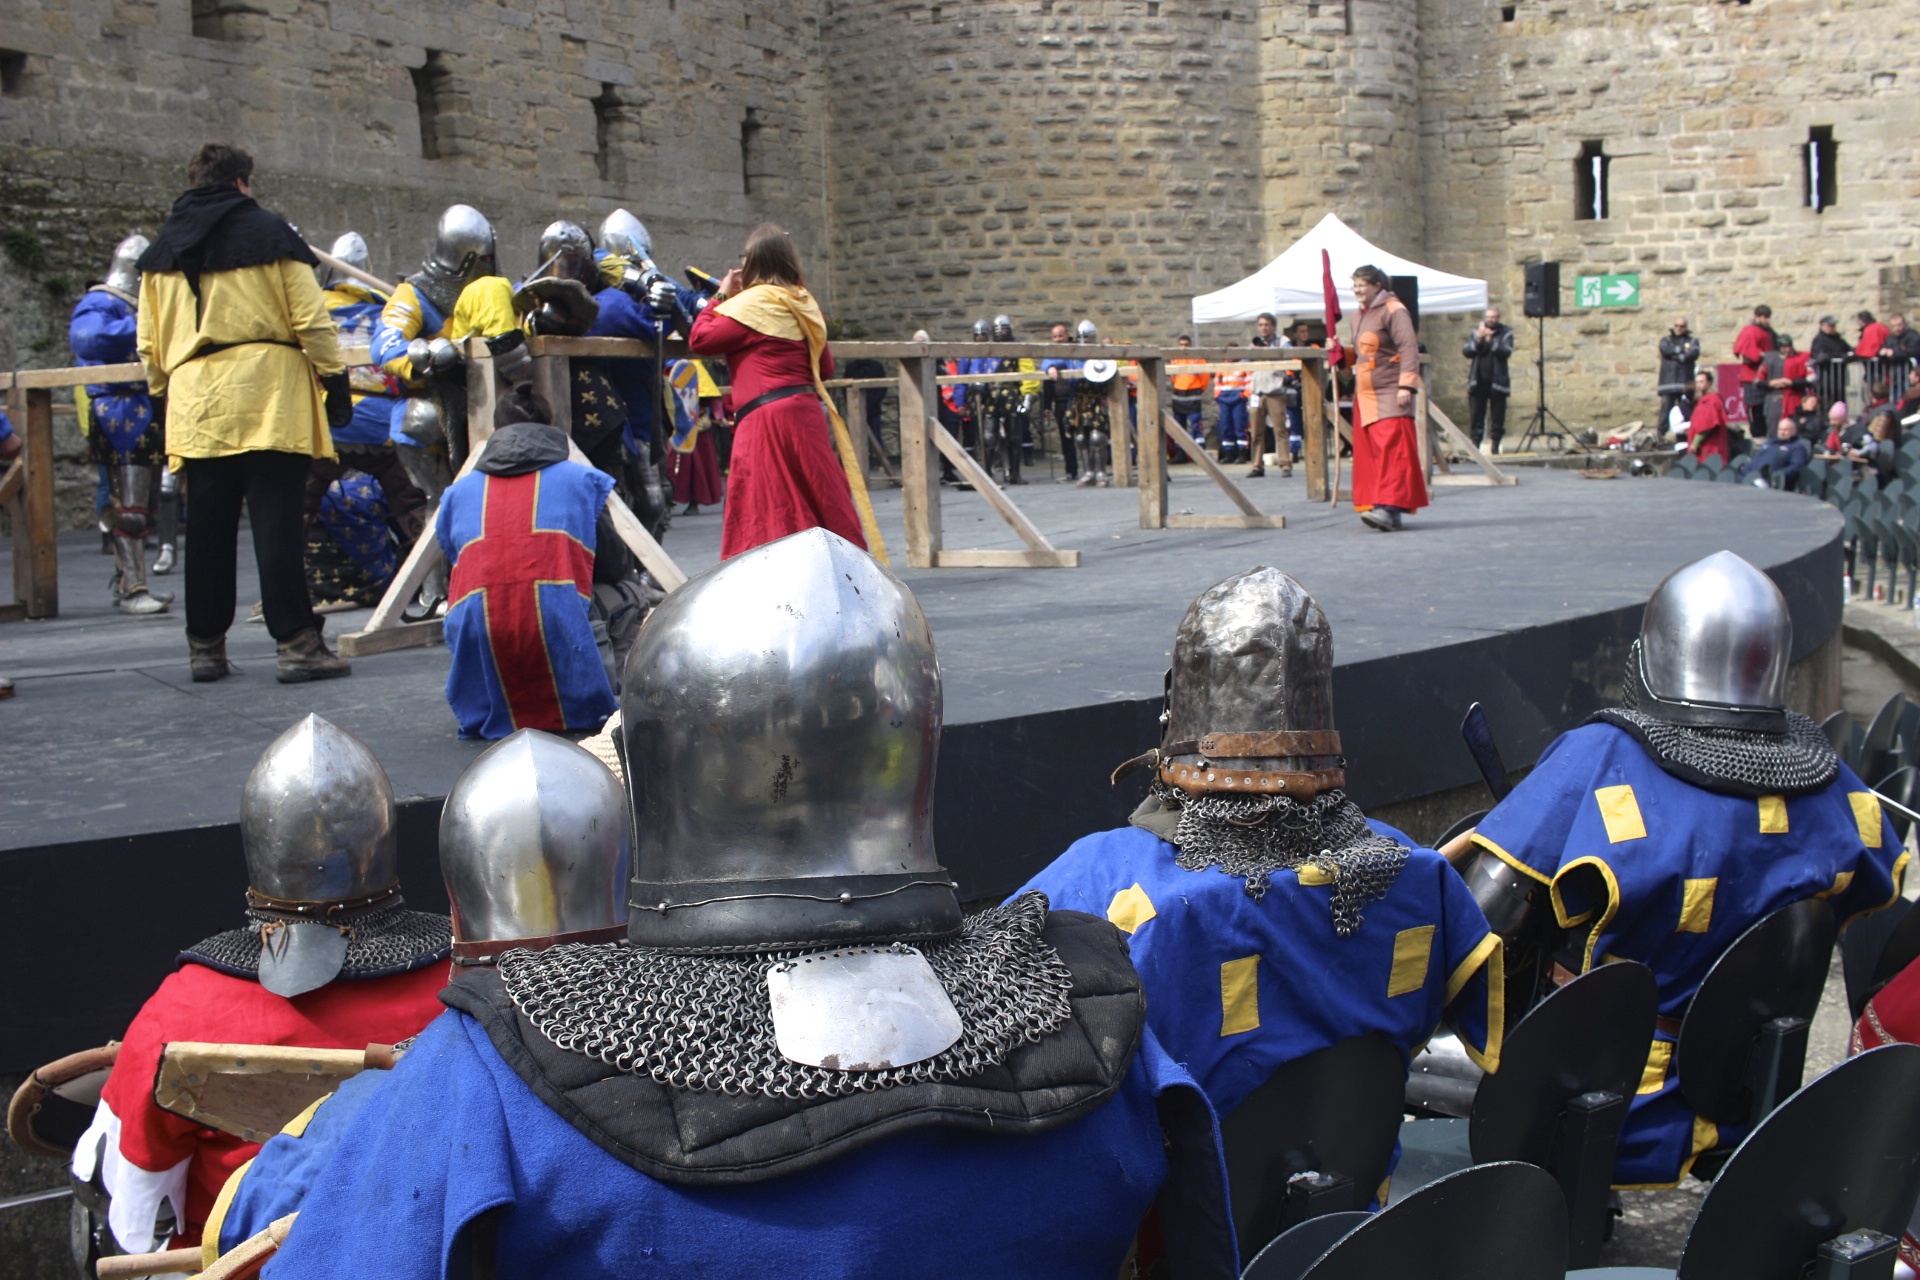 Découvrez les multitudes de gites de charmes proches de Carcassonne proposés par le domaine de Puychene.